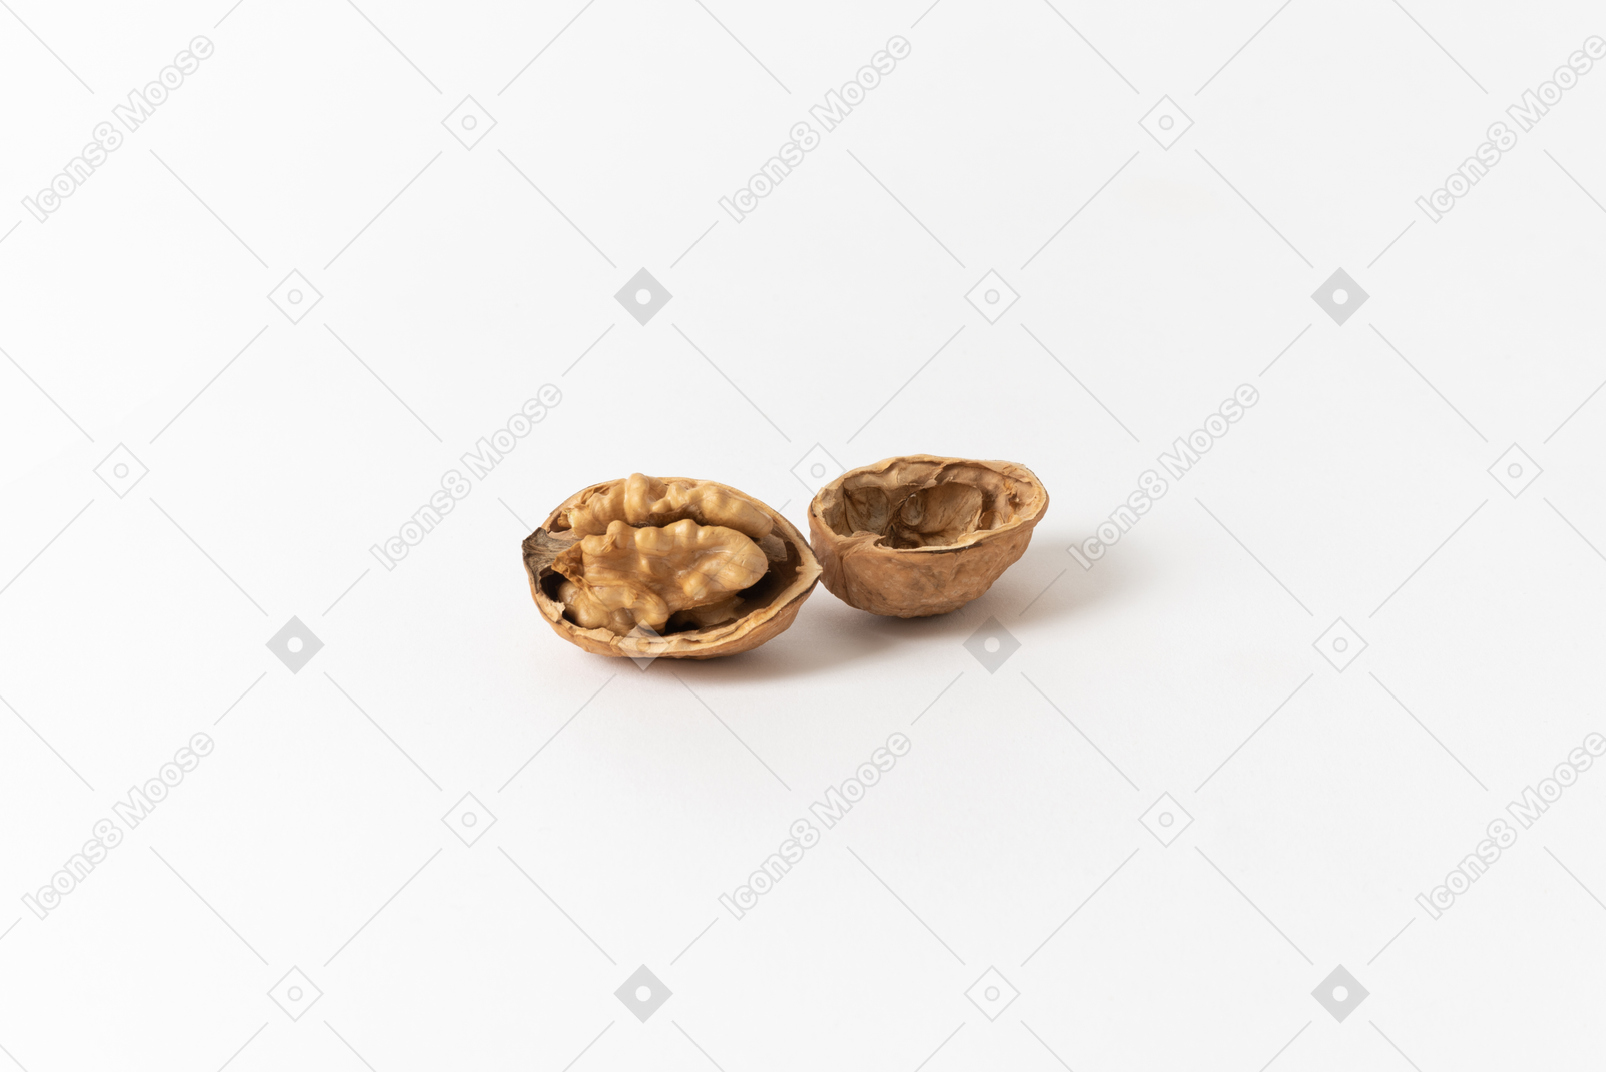 Broken walnut in a shell